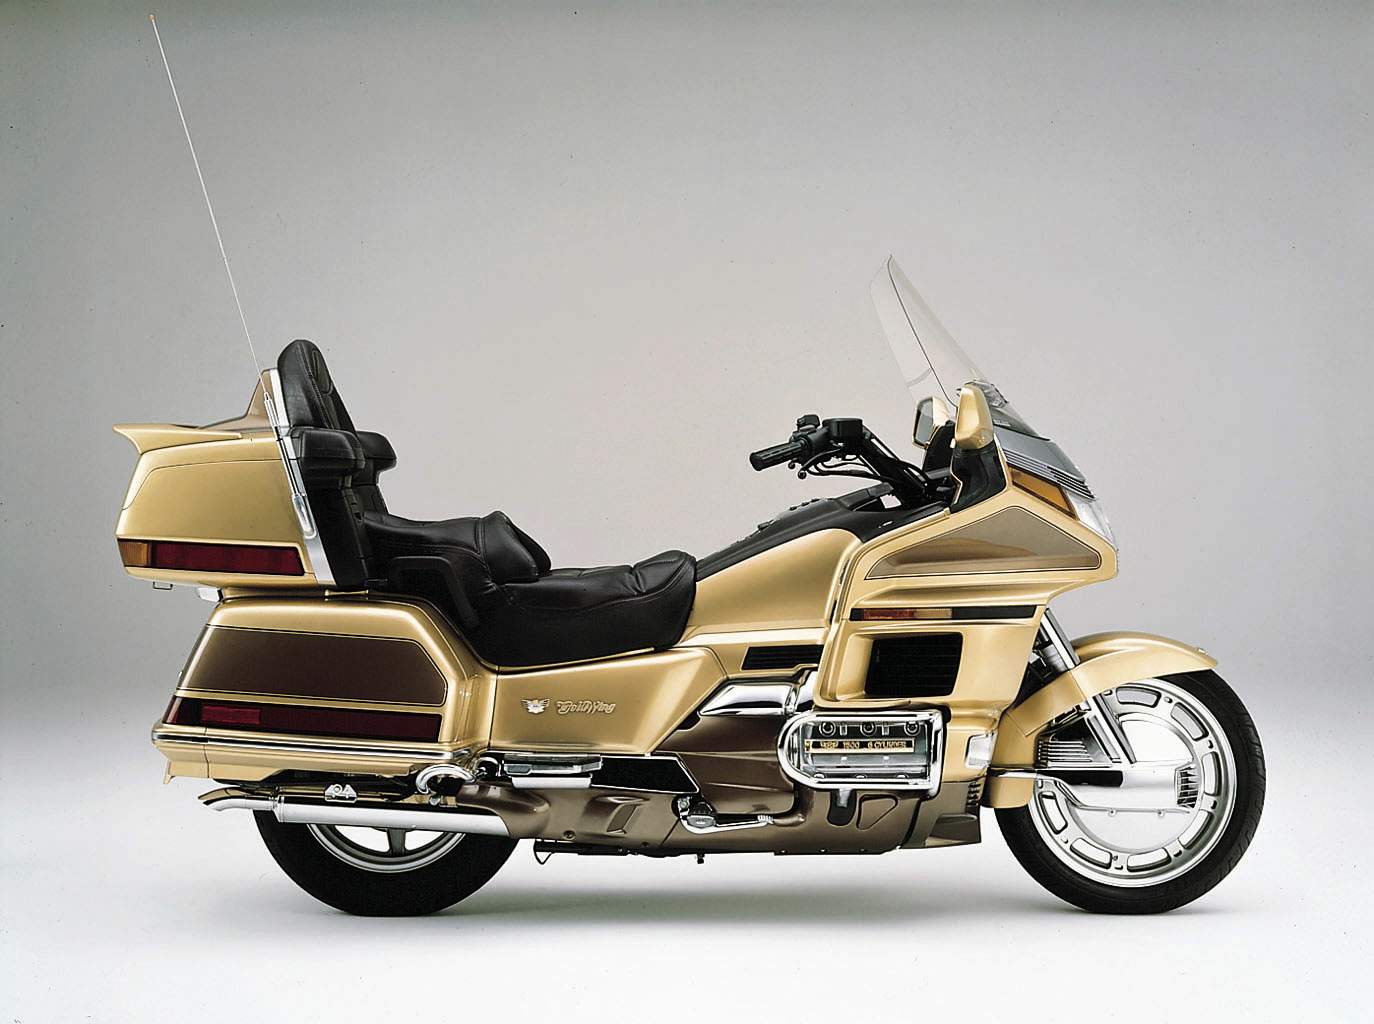 Honda gl1500. Honda gl1500 Gold Wing. Honda Goldwing 1500 se. Honda gl1500 Goldwing se. Мотоцикл Honda Gold Wing 1500.